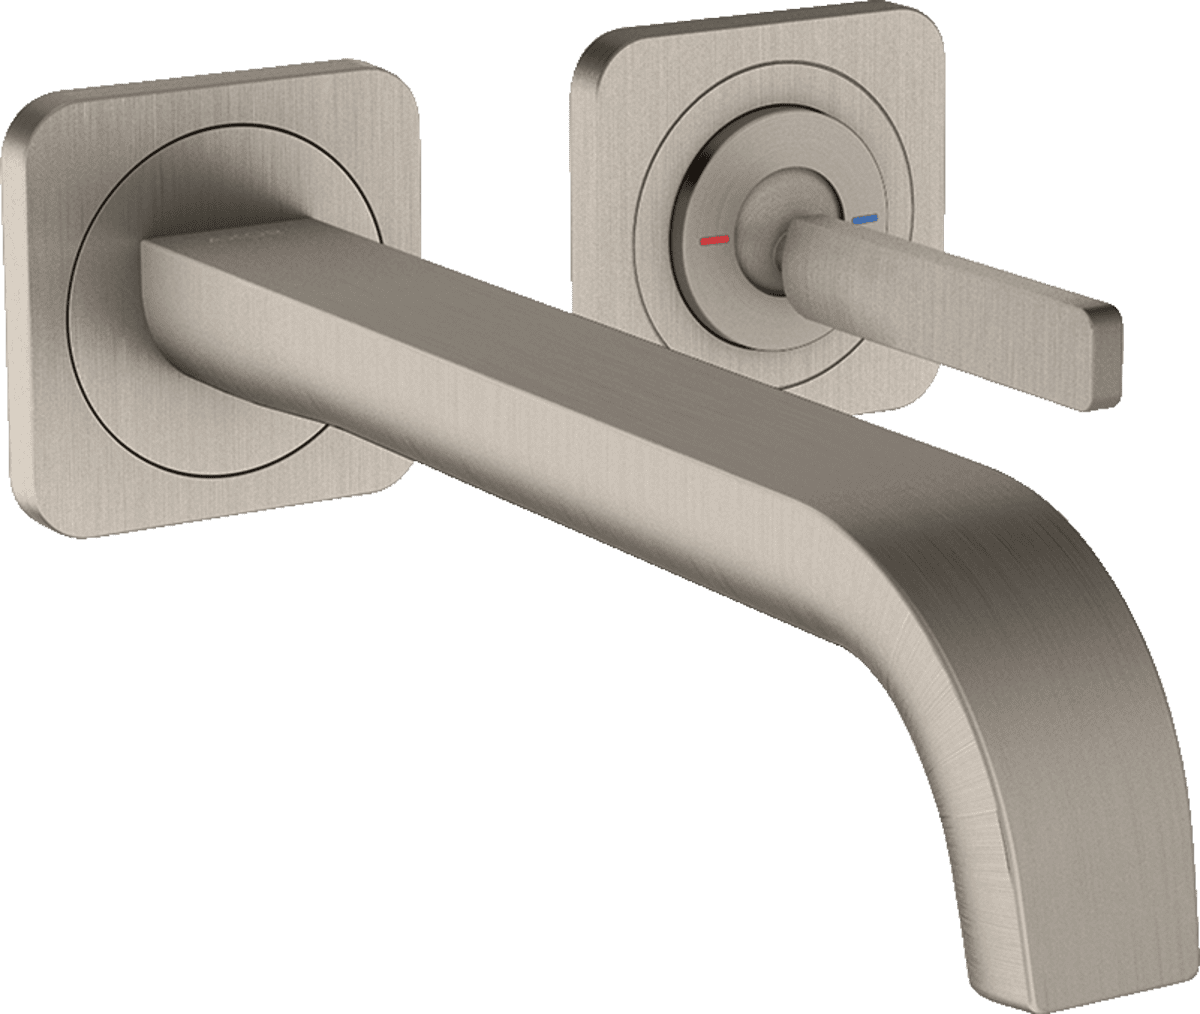 εικόνα του HANSGROHE AXOR Citterio E Single lever basin mixer for concealed installation wall-mounted with pin handle, spout 221 mm and escutcheons #36106800 - Stainless Steel Optic